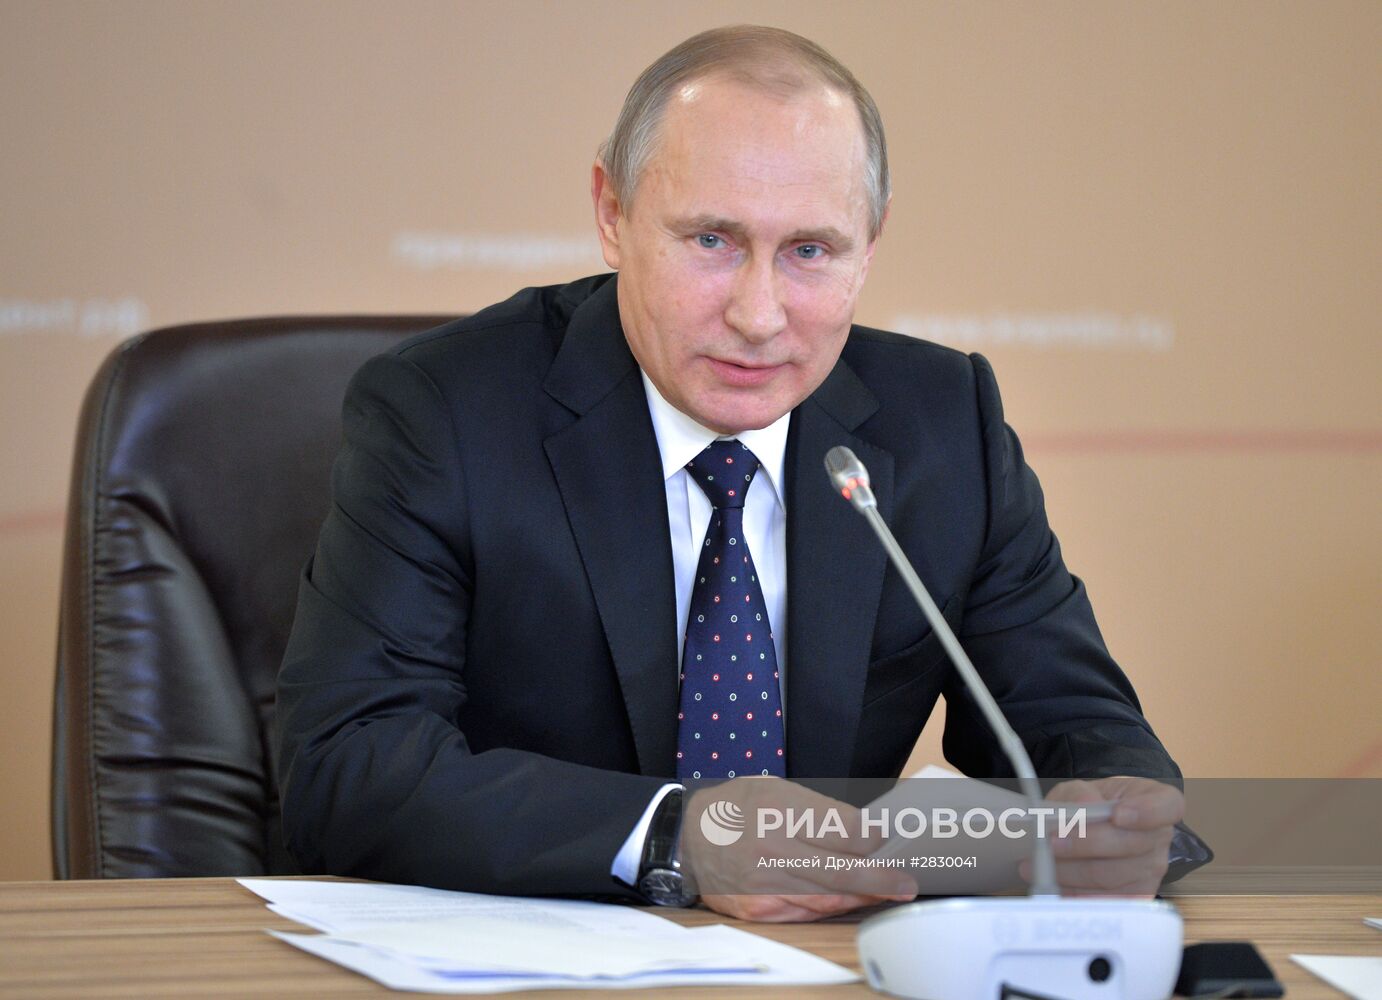 Рабочая поездка президента РФ В. Путина в Казань